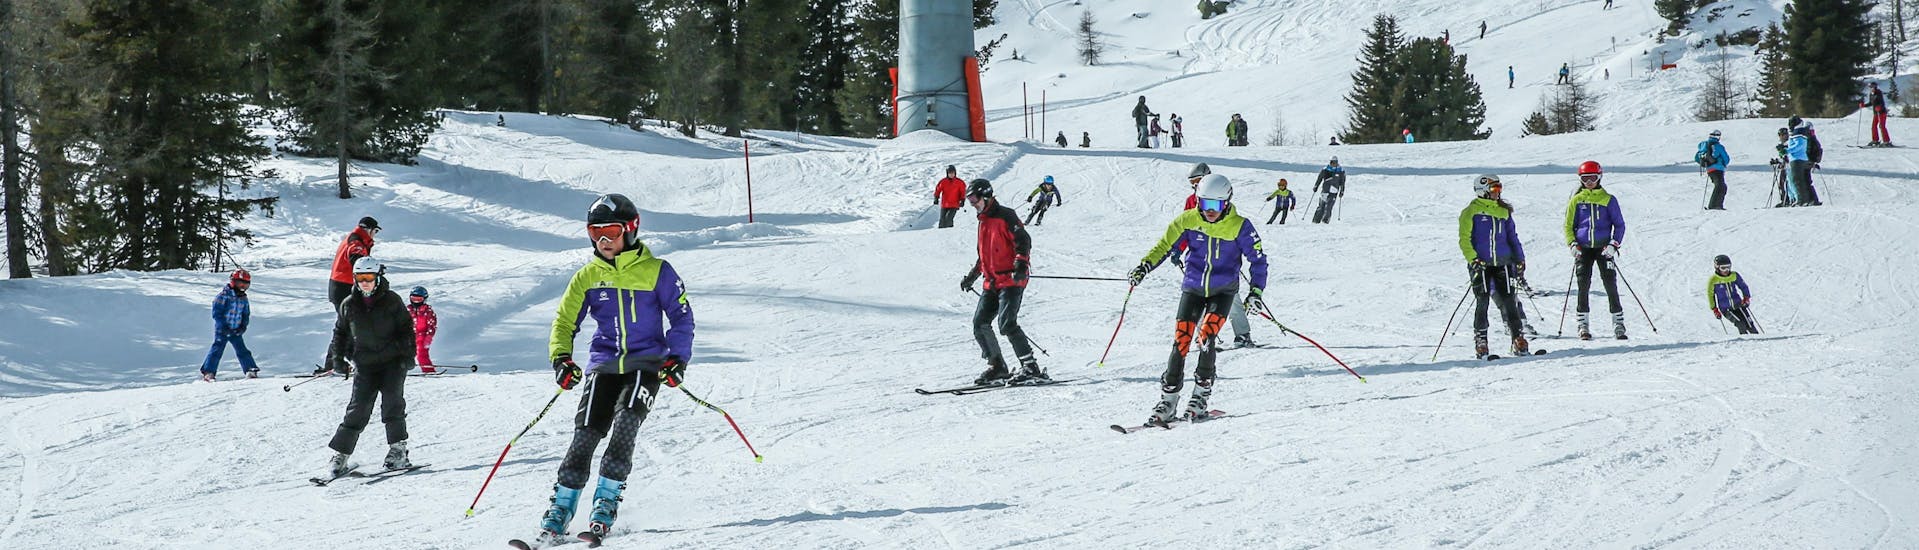 Adultos y niños esquiando en la estación de esquí de Kreishberg.